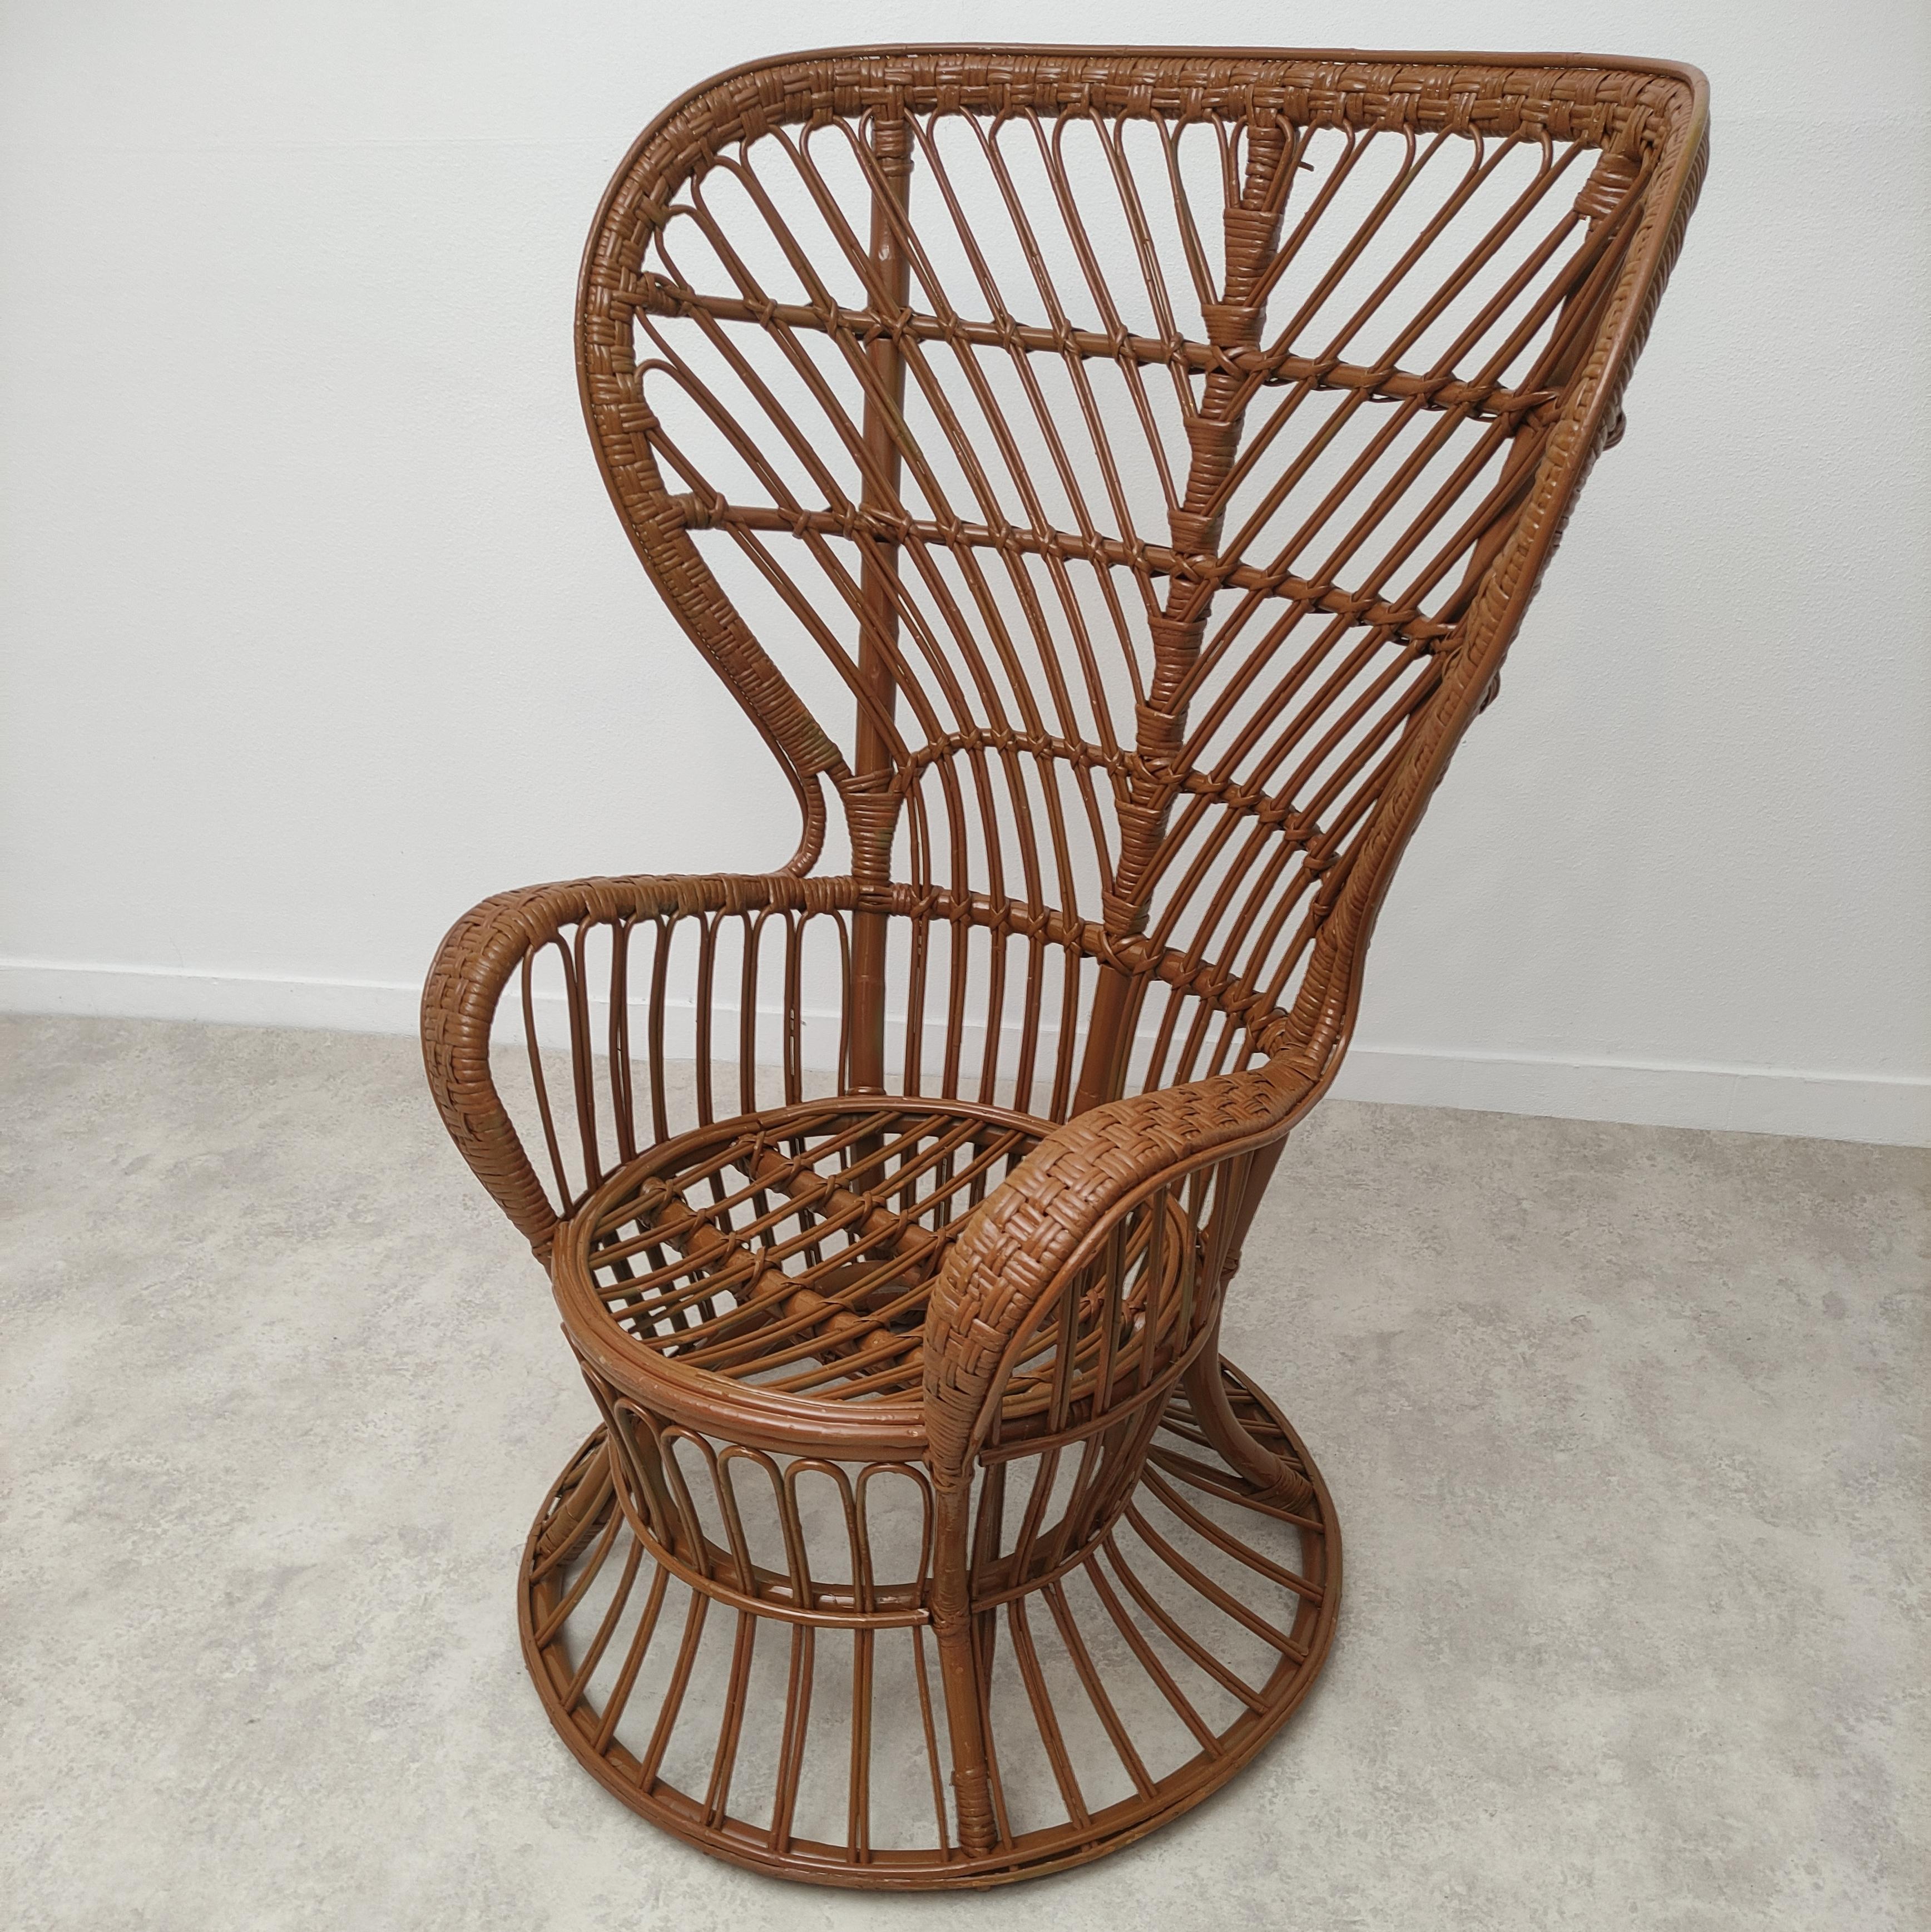 
Ikonischer Biancamano-Sessel, entworfen von Gio Ponti und Lio Carminati für die Neugestaltung des Biancamano